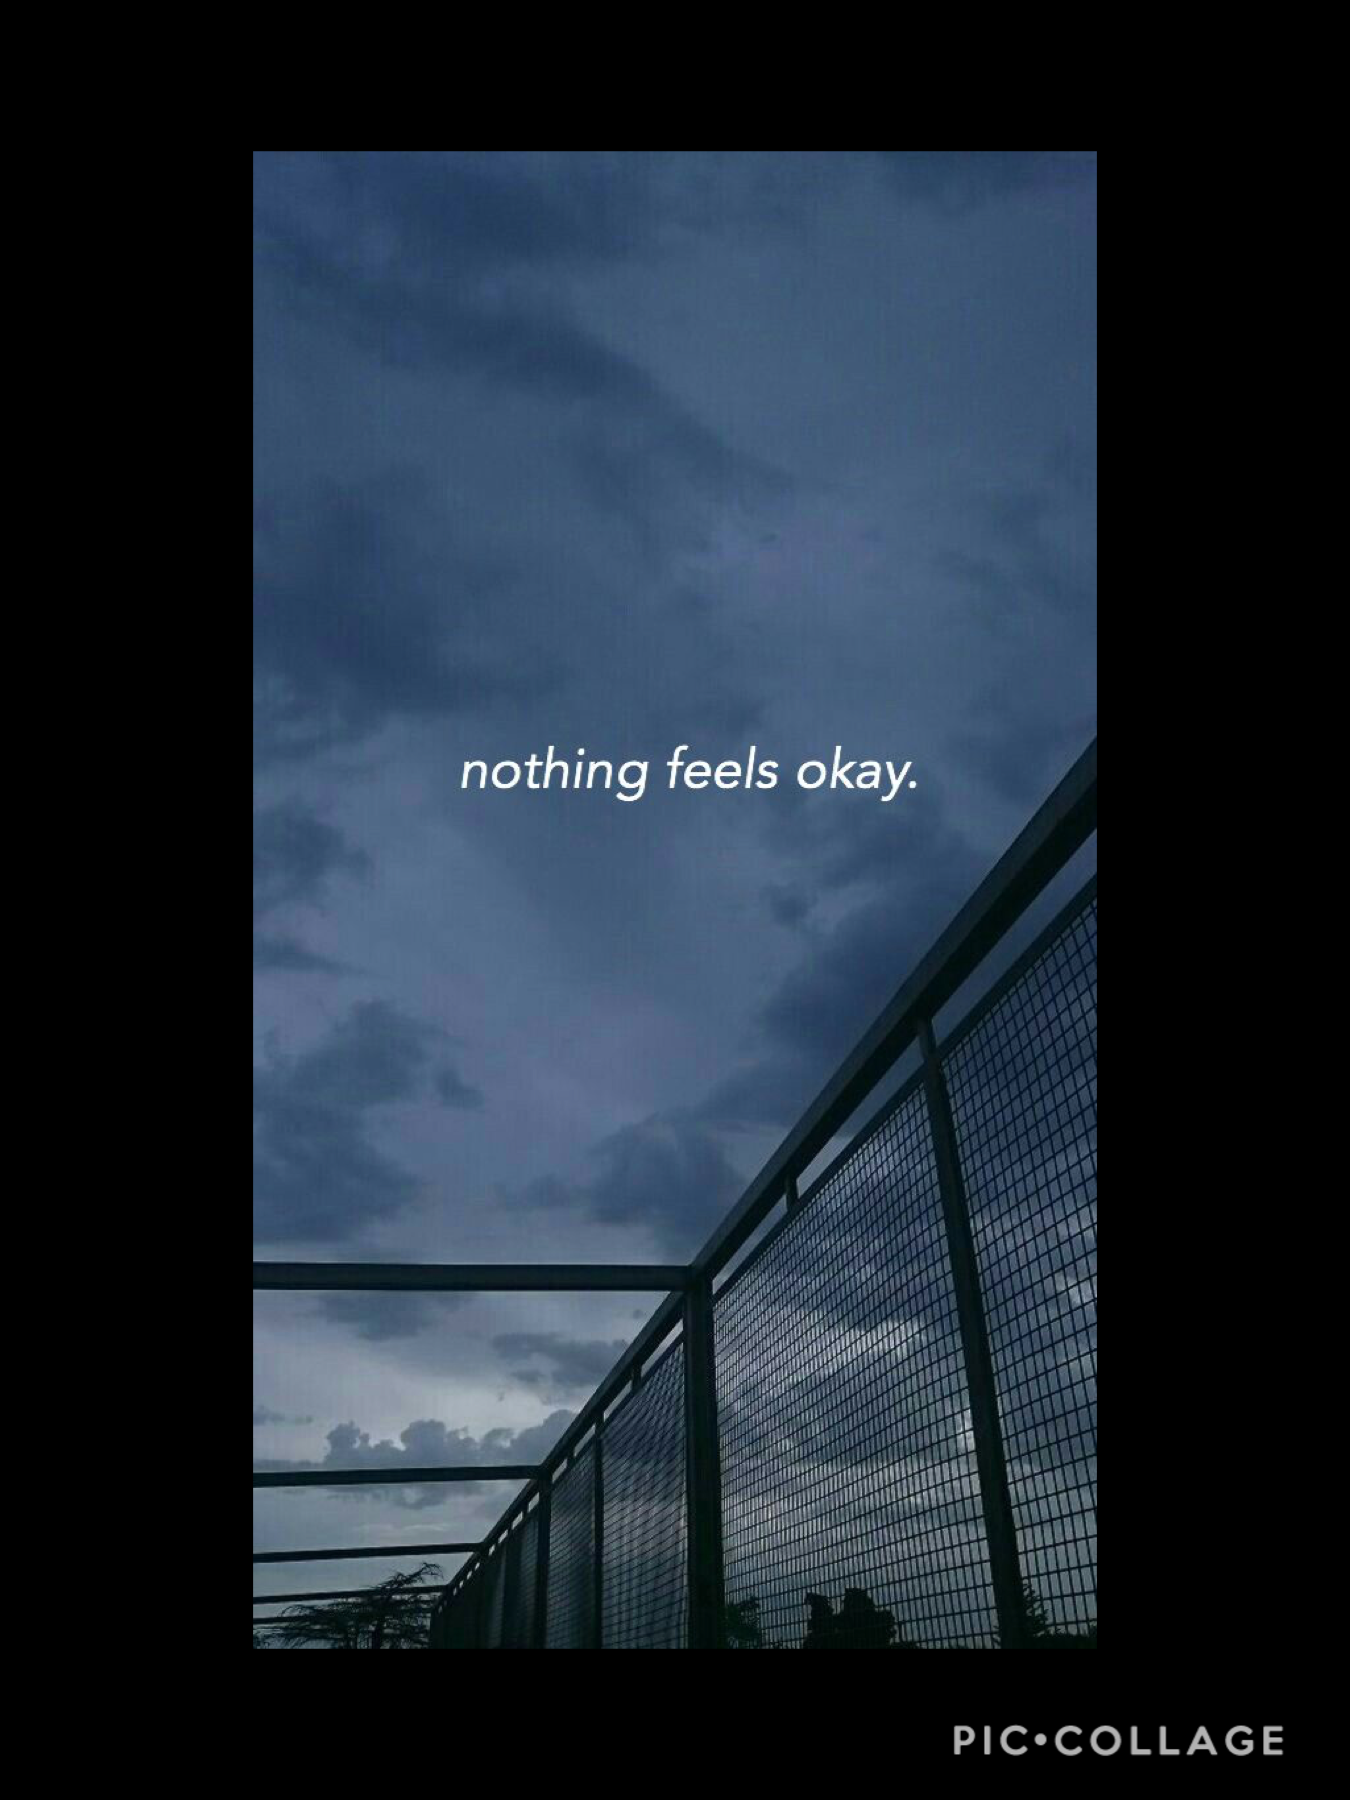 Nothing feels ok